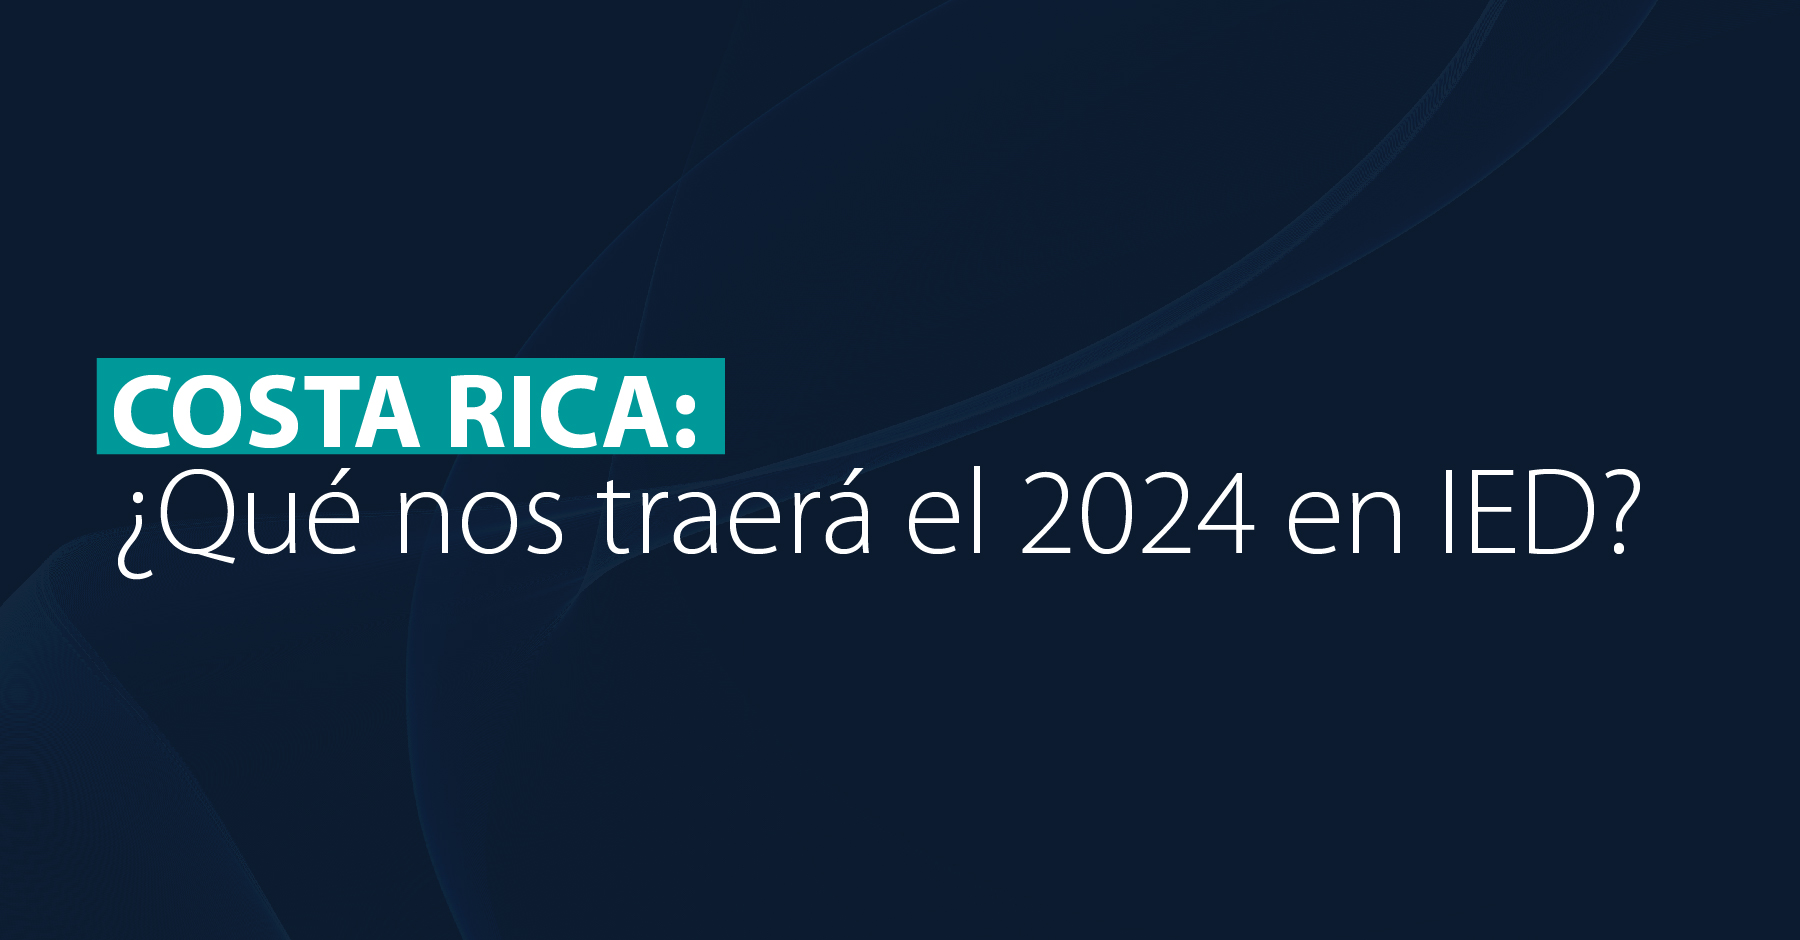 Costa Rica: ¿Qué nos traerá el 2024 en IED?